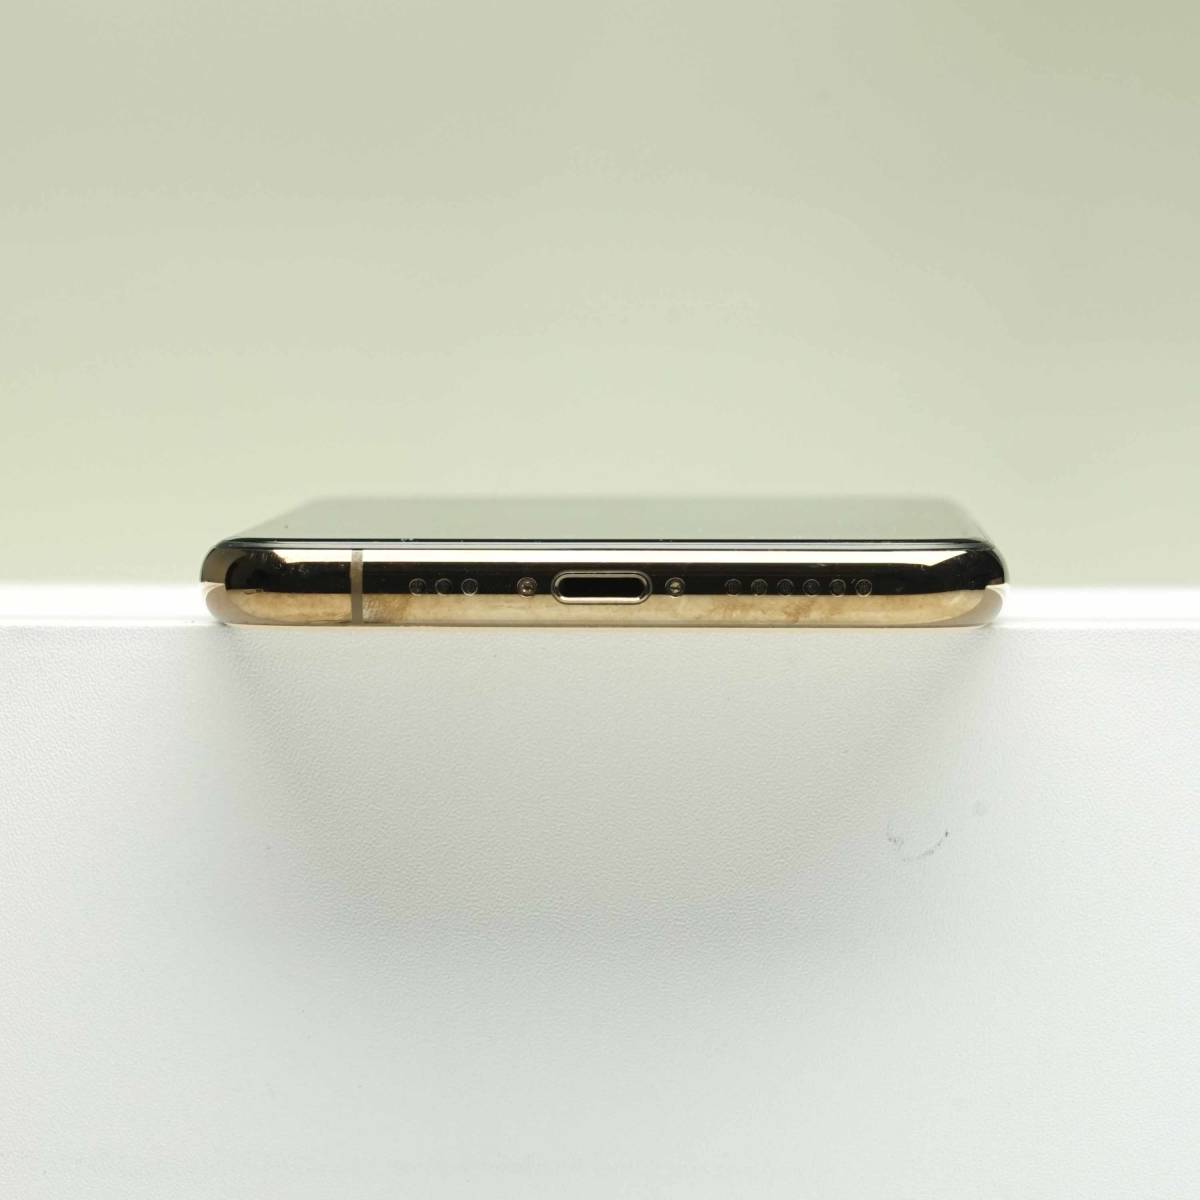 史上一番安い SIMフリー MWC52J/A ゴールド 64GB Pro 11 iPhone 訳あり